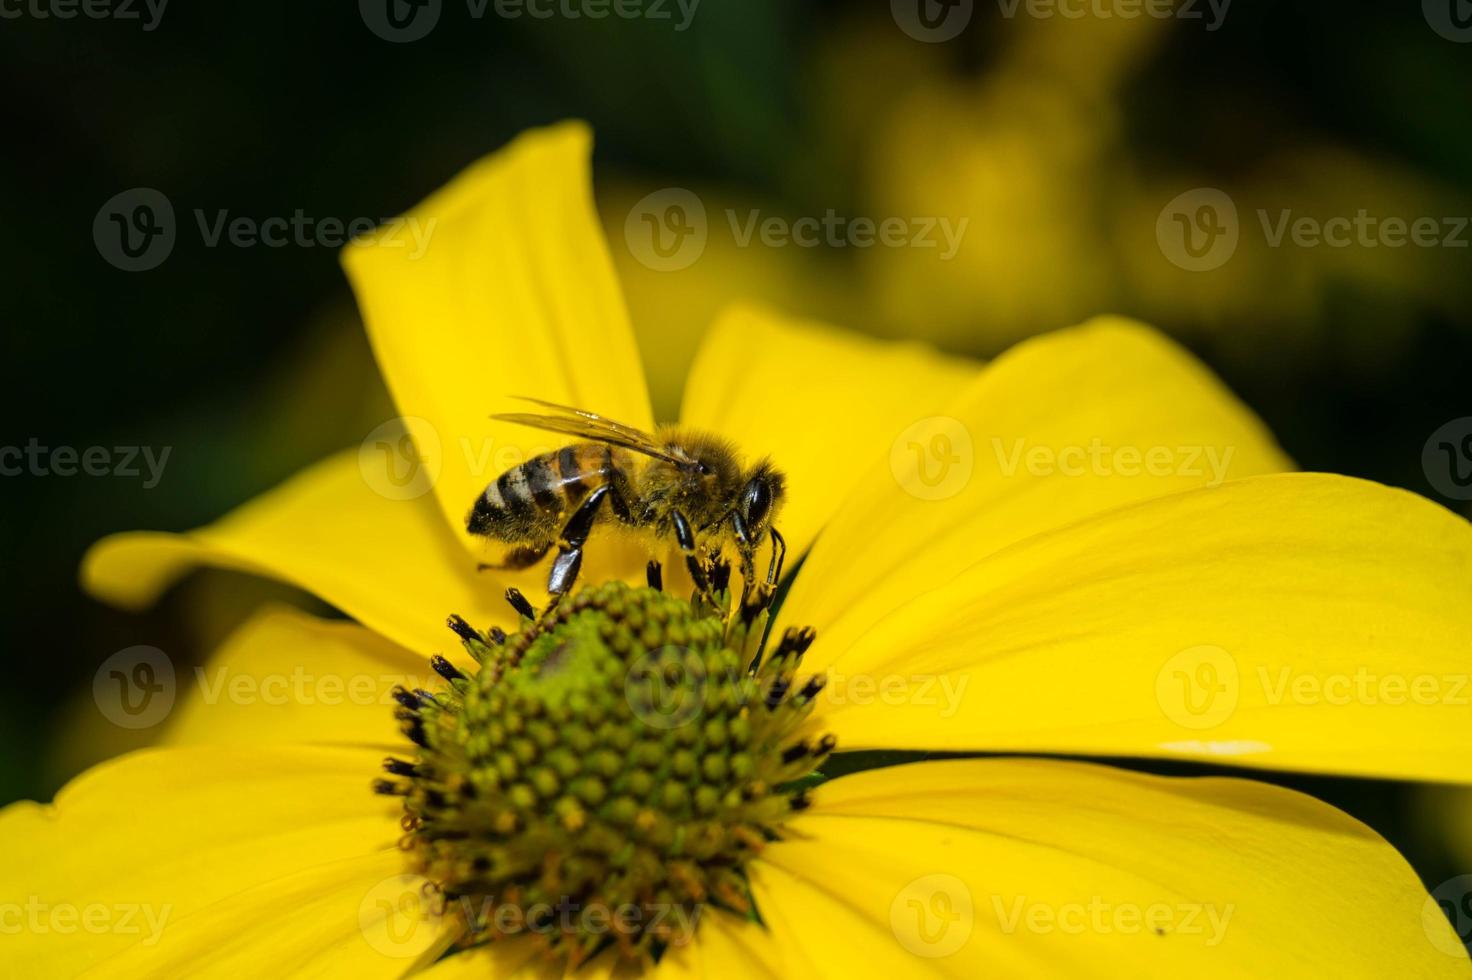 gli insetti raccolgono polline in giardino foto